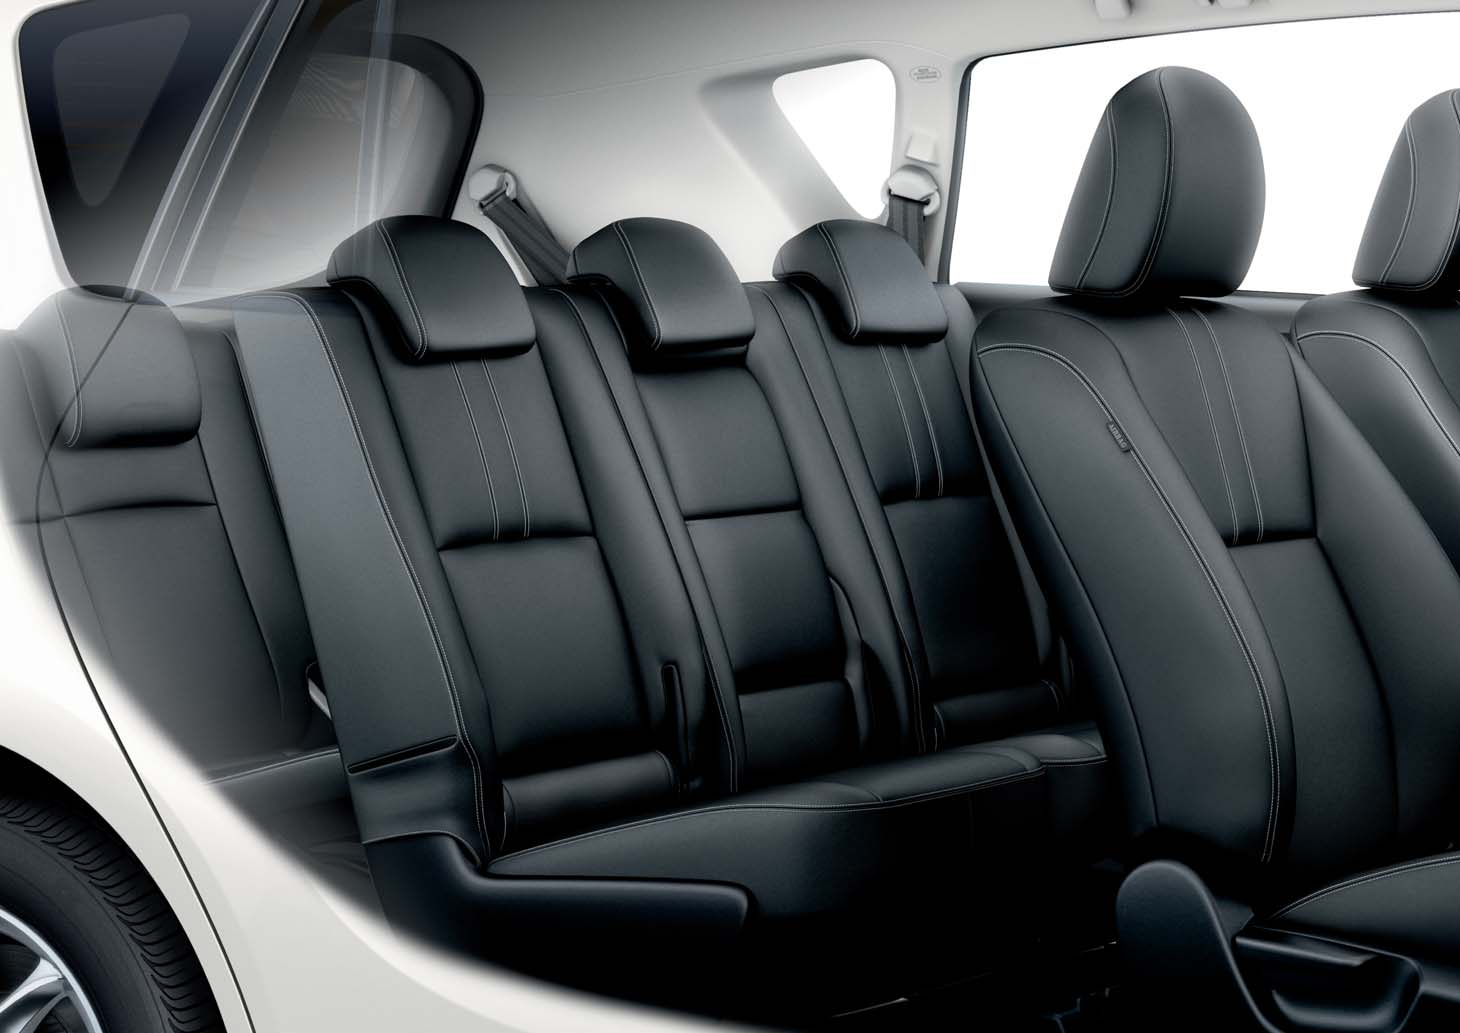 Stílus az utastérben A Toyota belső, különleges stílust formáló tartozékai a Verso utasterét igazi prémium minőséggel itatják át az elegáns bőrkárpit, a kényelmes ülésfűtés és az egyedi sebességváltó